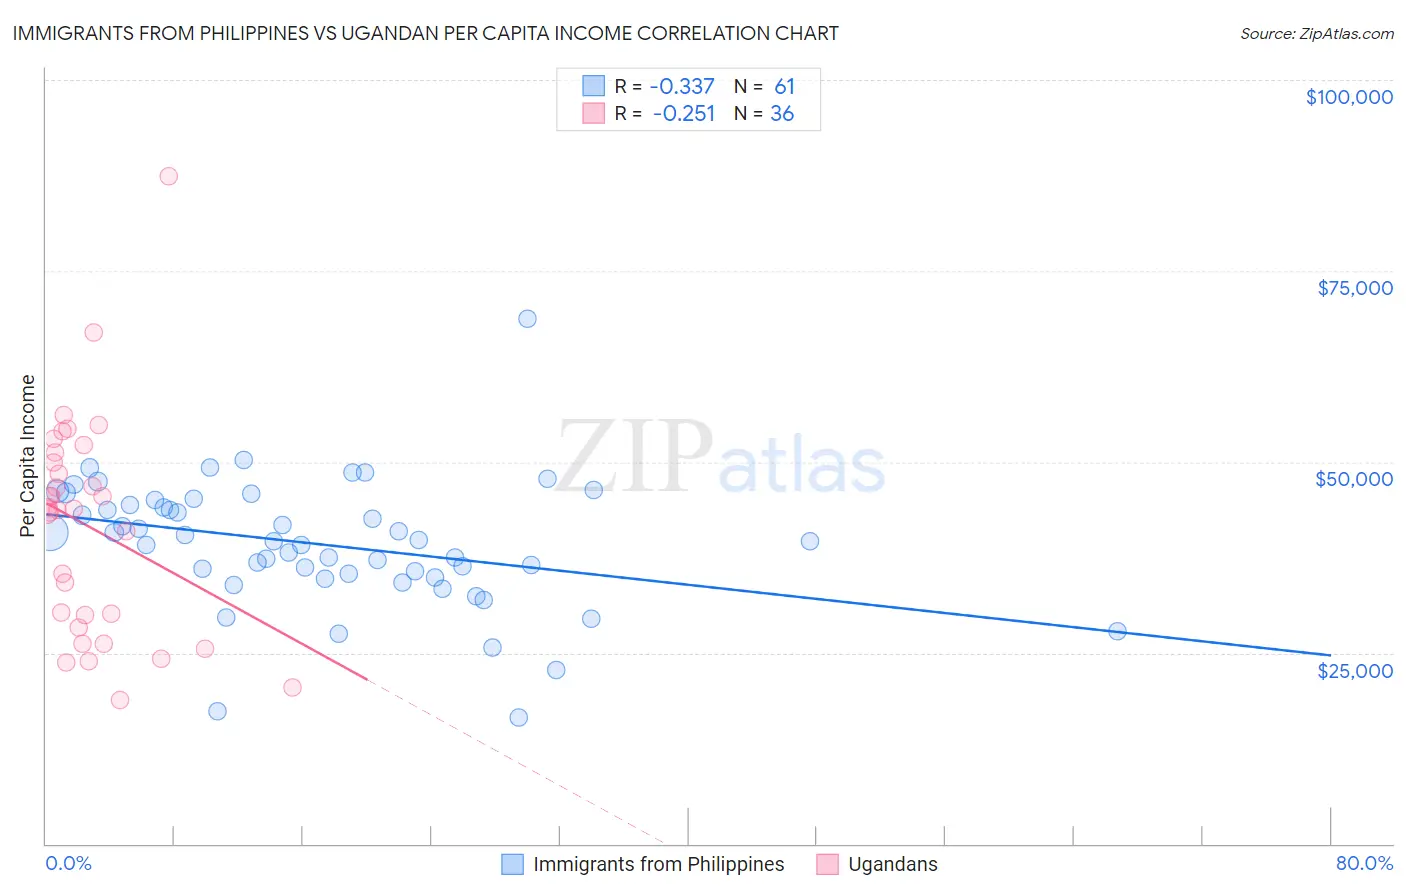 Immigrants from Philippines vs Ugandan Per Capita Income